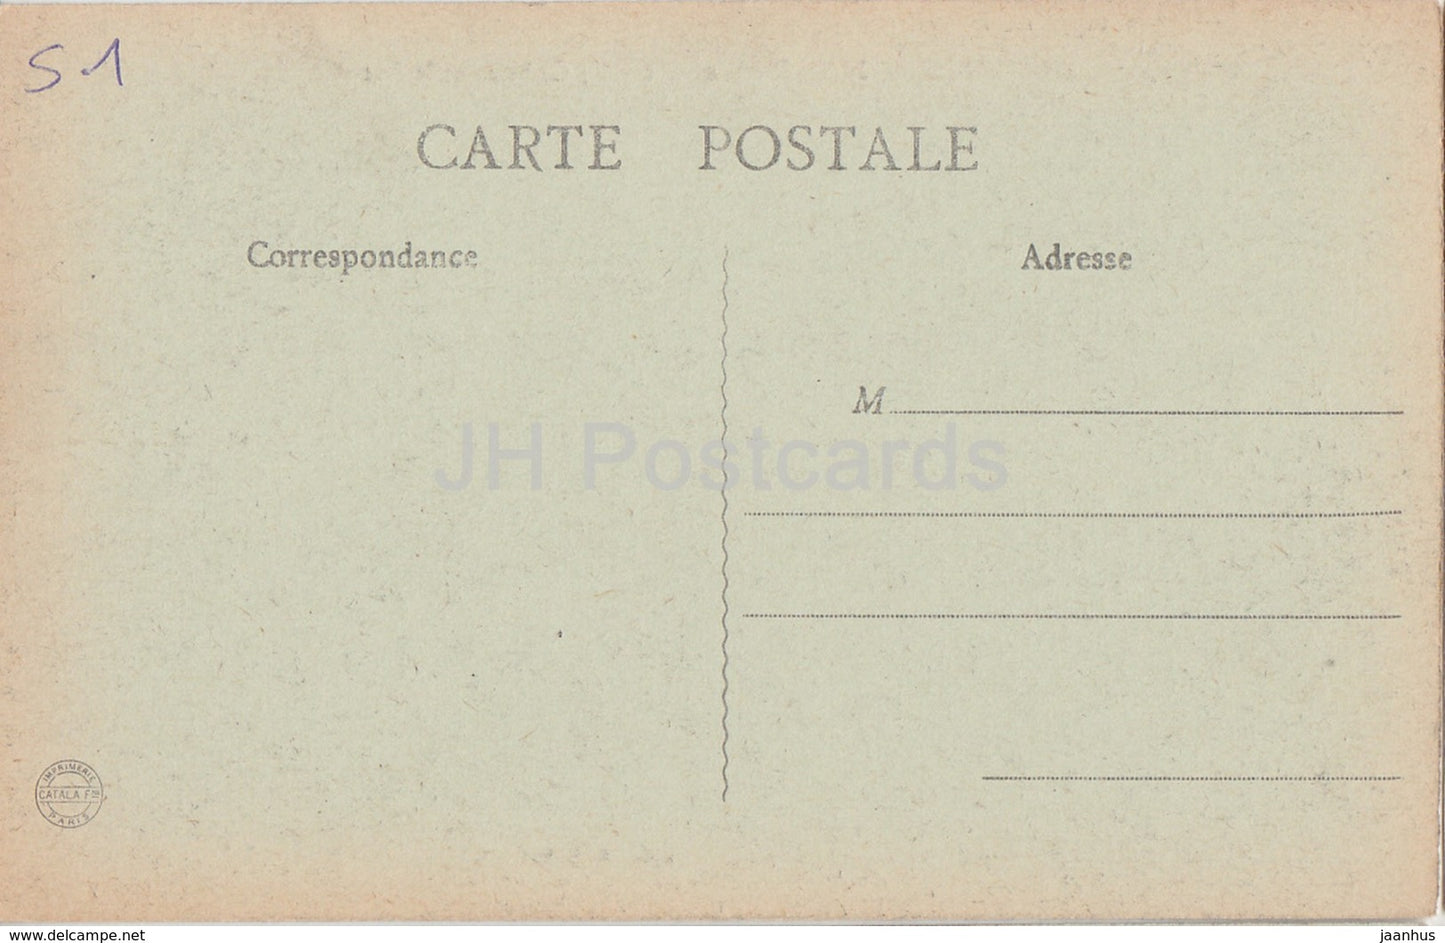 Boursault - Le Château et le Lac - château - 16 - carte postale ancienne - France - inutilisée